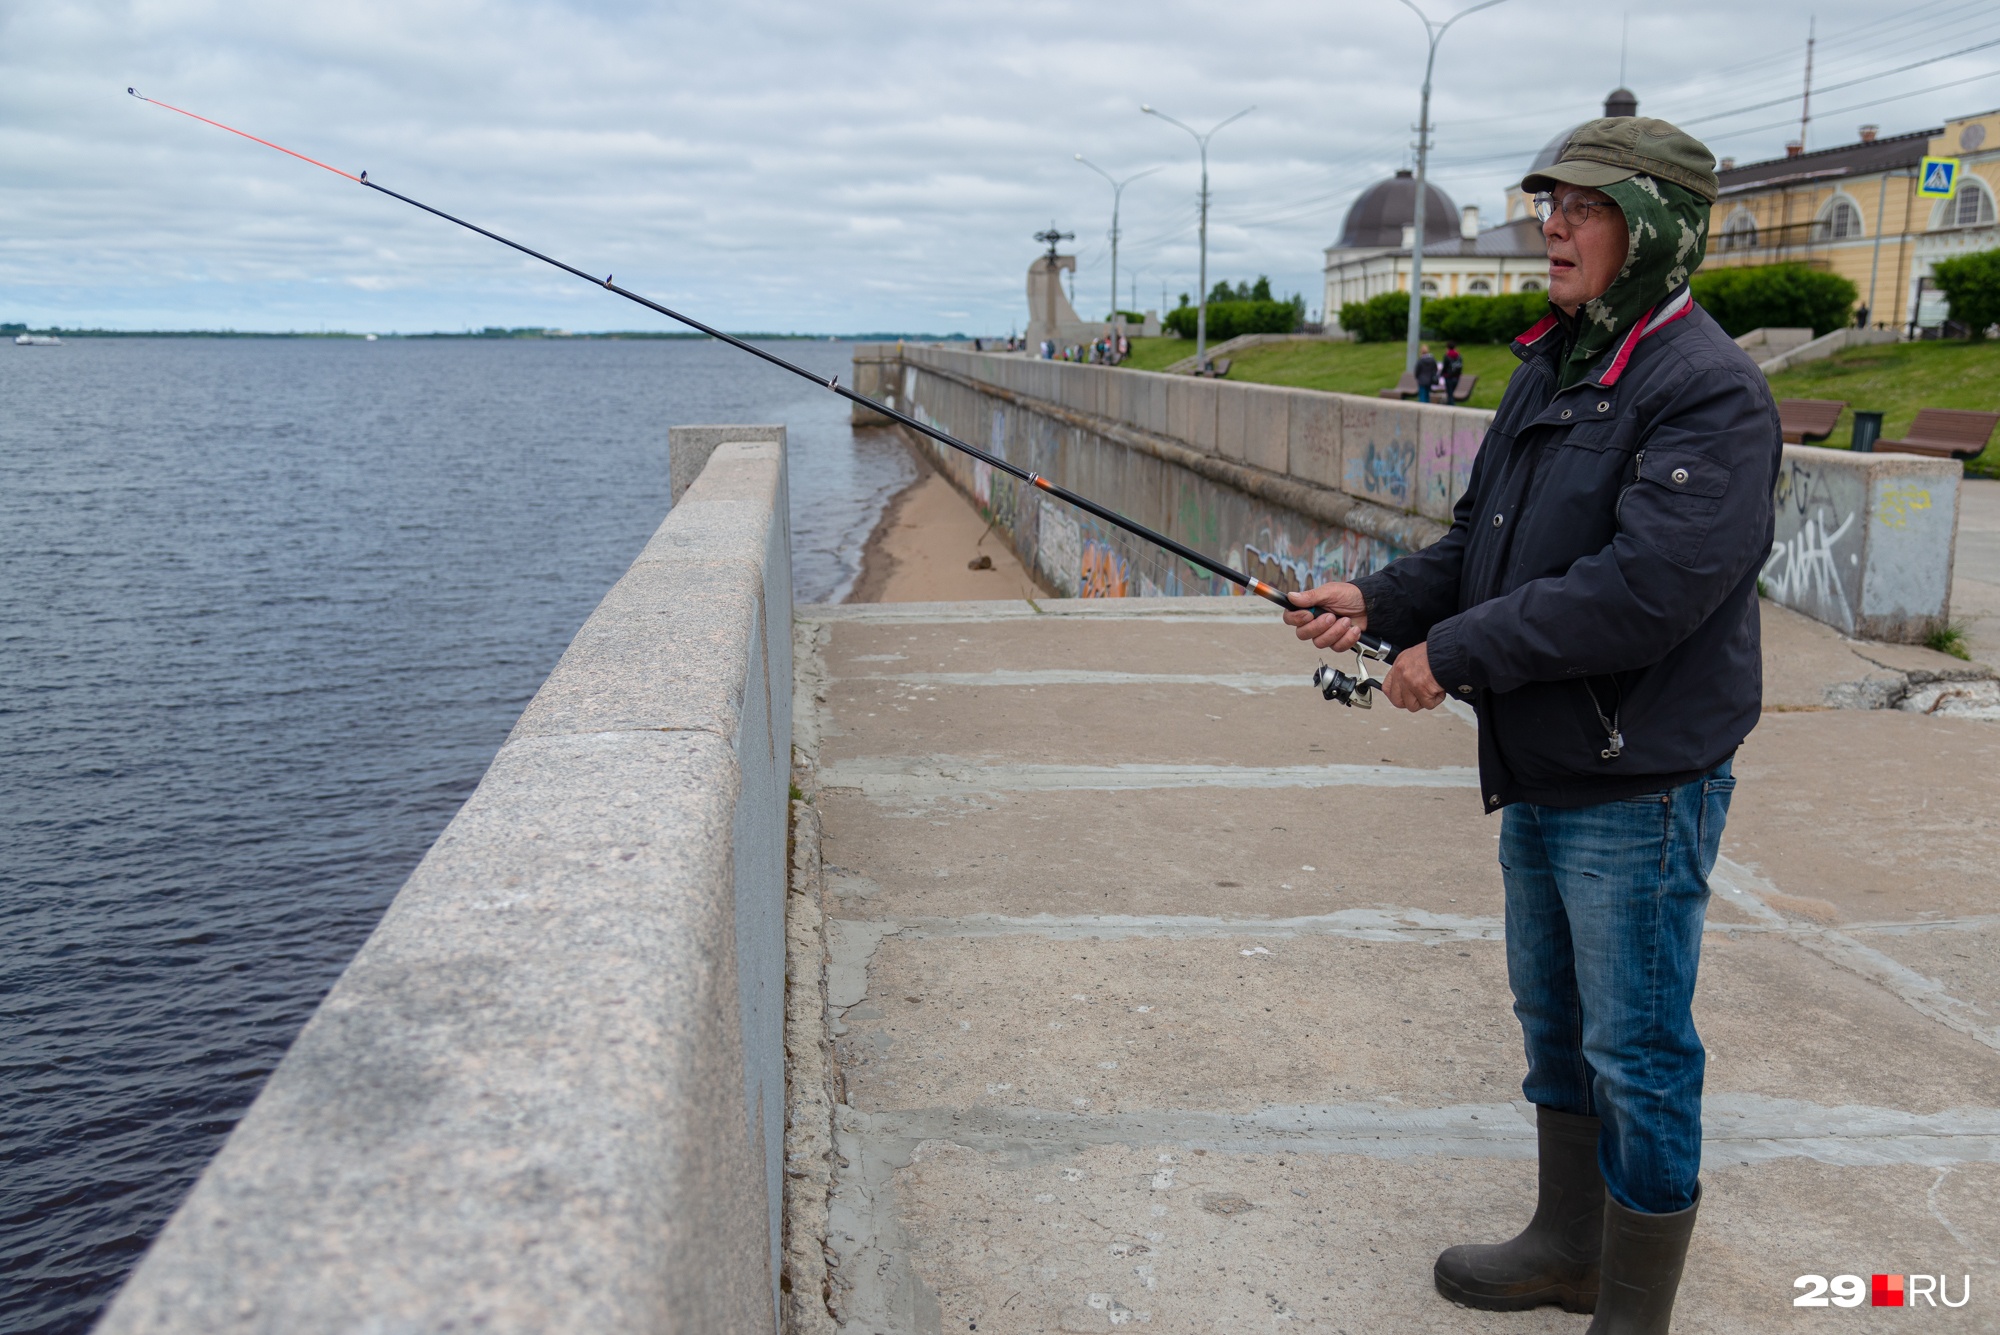 Александр Иванович говорит, что занялся рыбалкой на пенсии от нечего делать